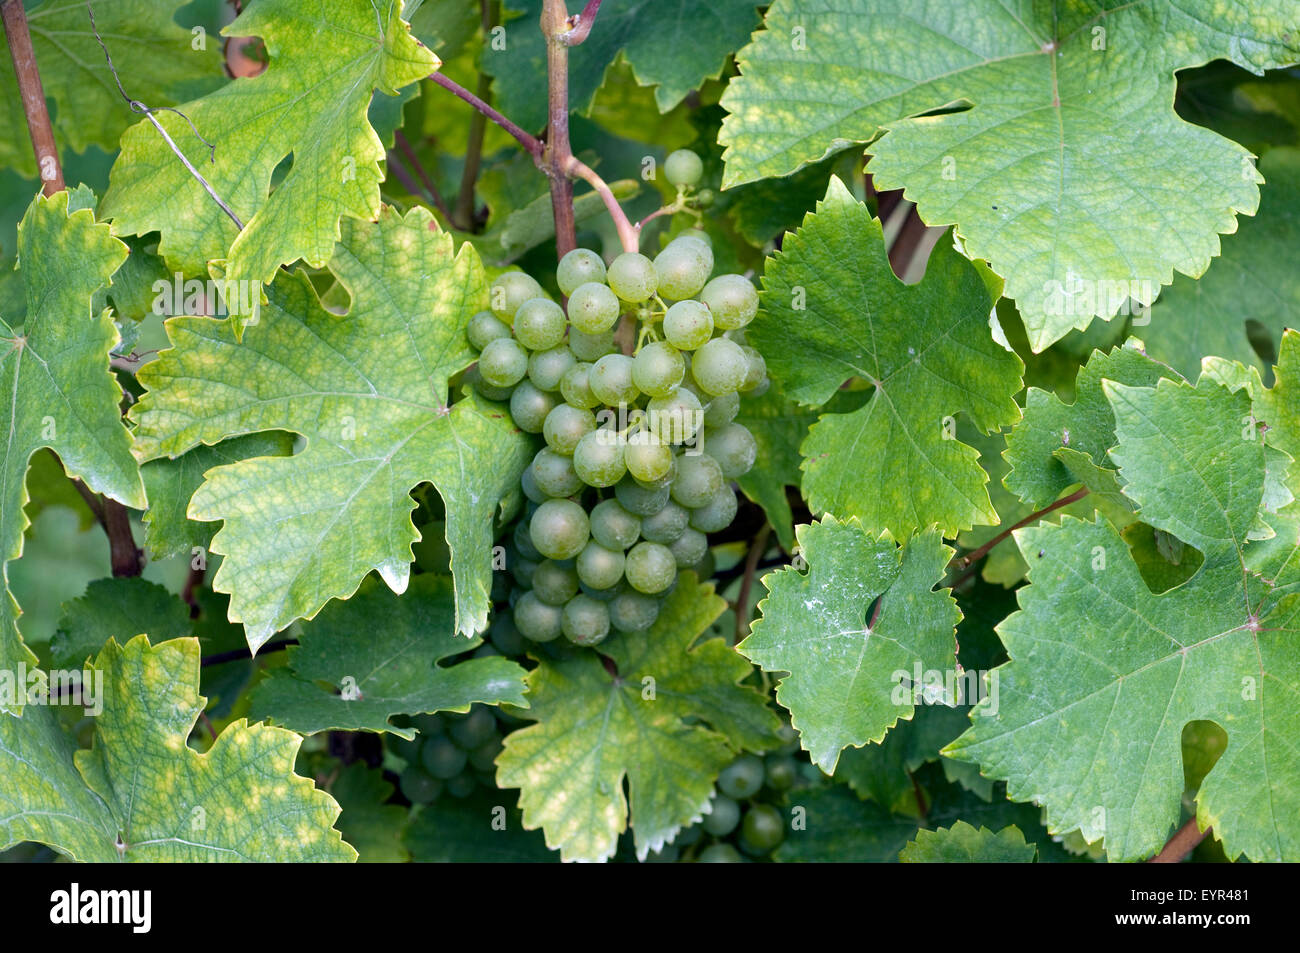 Gruener Veltiner, Weisse Weintrauben, Wein, Weinpflanzen, Reben, Fruechte, Beeren, Obst, Stock Photo